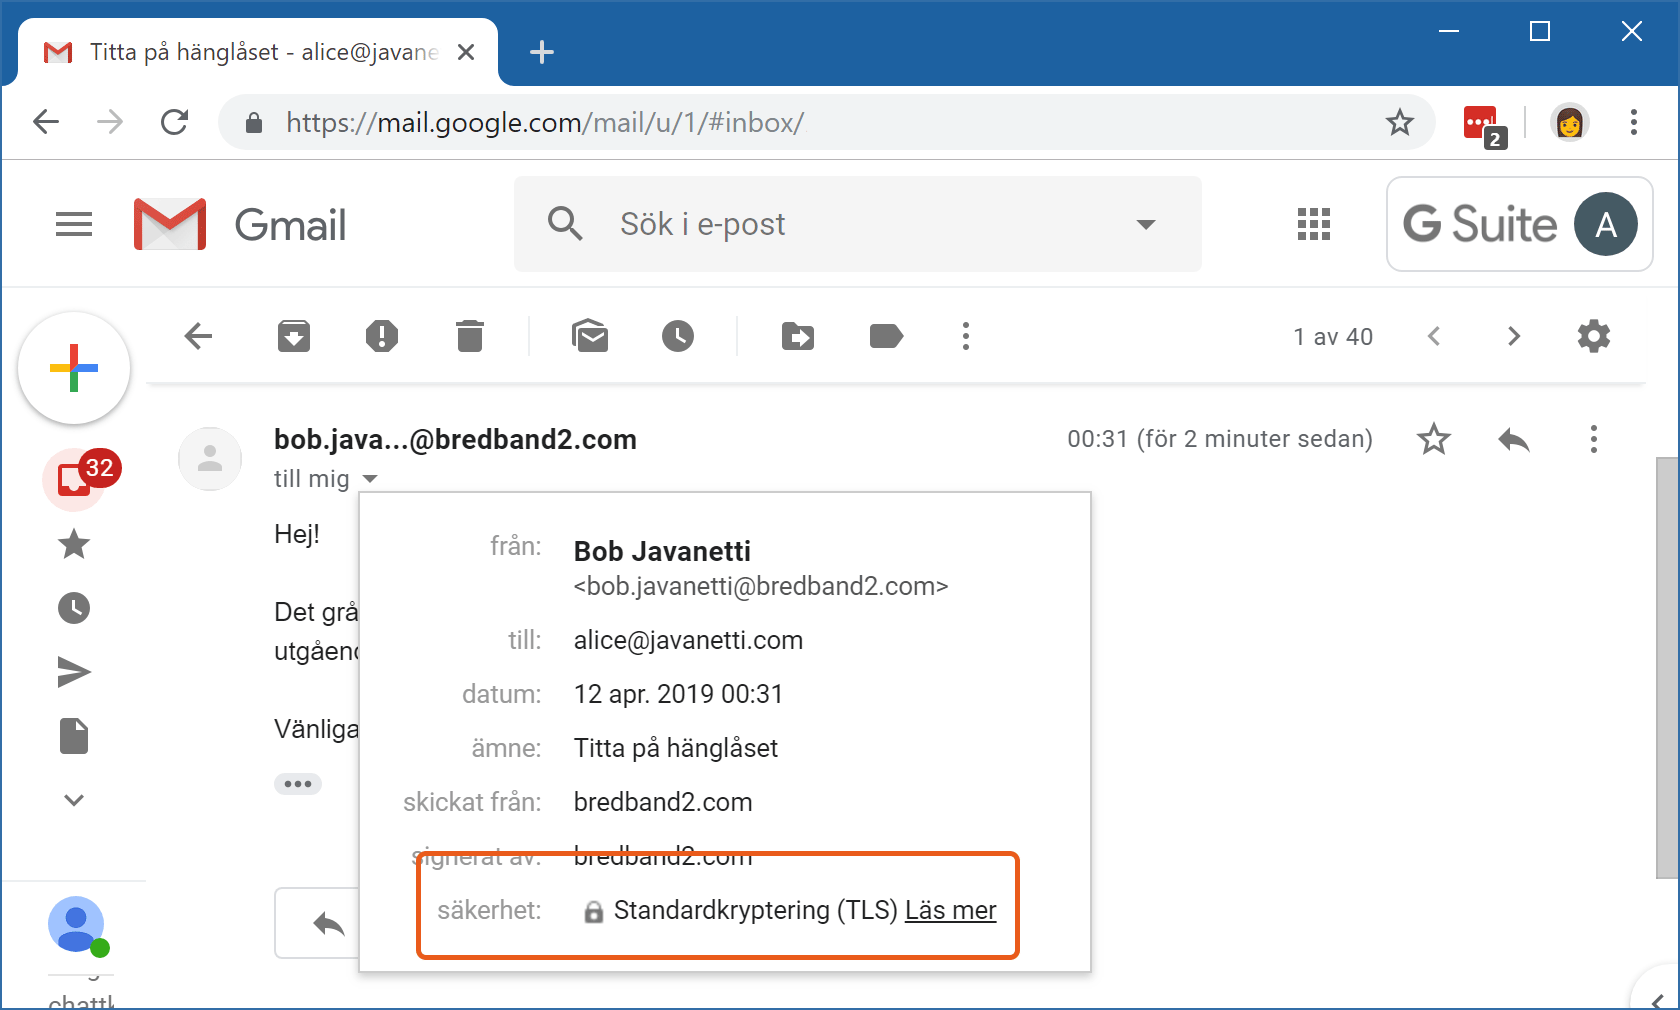 Gmail visar att mejlets säkerhetsnivå är "Standardkryptering (TLS)".